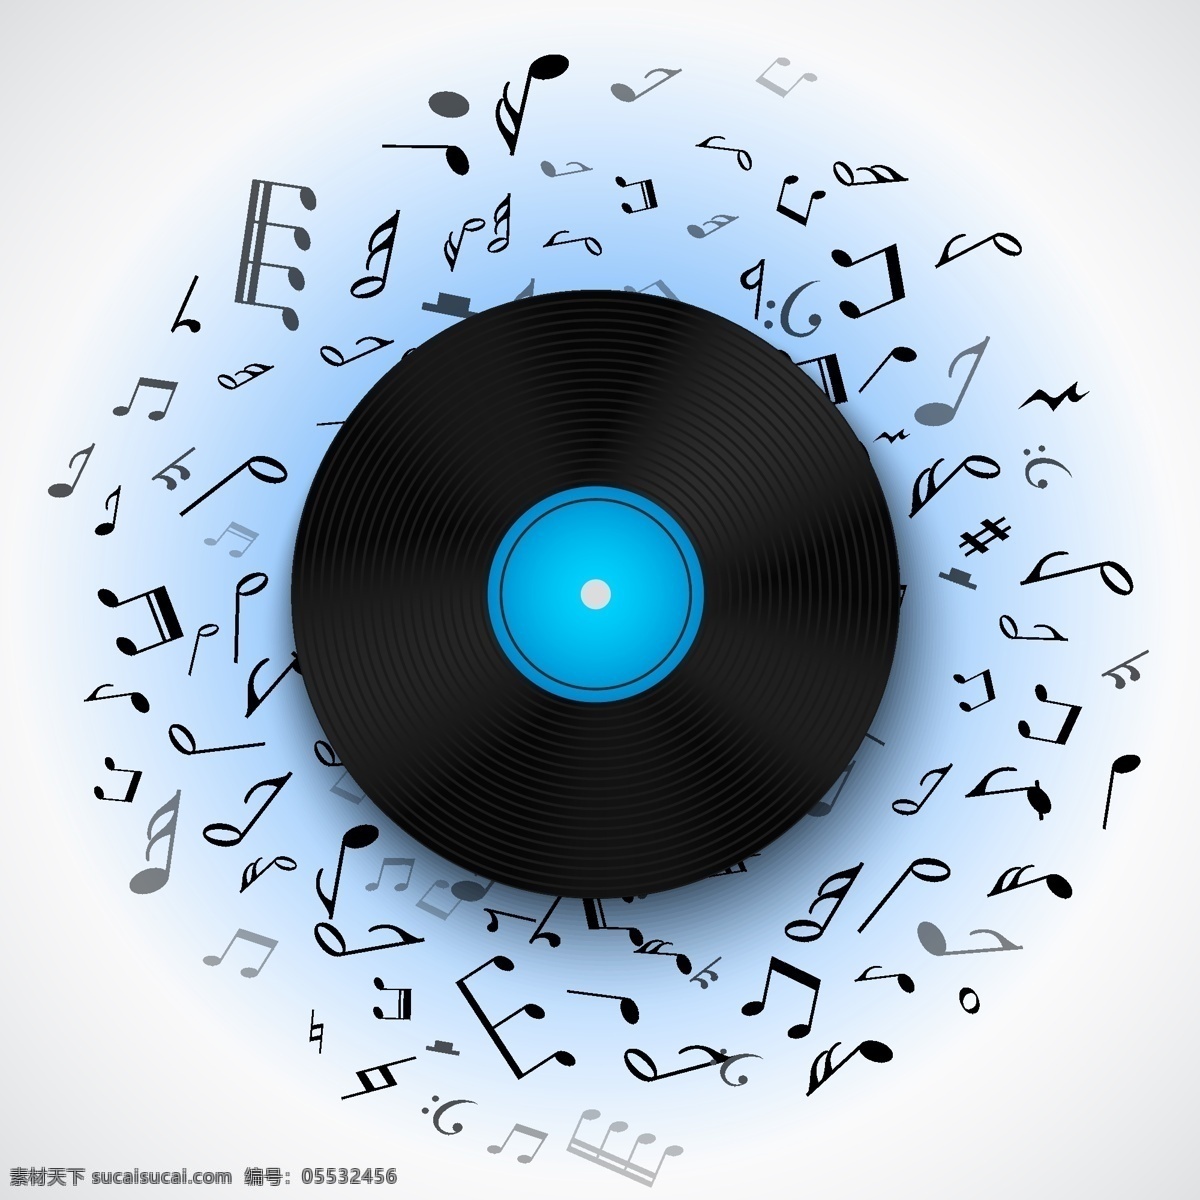 蓝色 发光 音乐节 海报 宣传 矢量 简约 音乐 符号 黑白 碟片 唱片 背景 黑胶 cd 封面 矢量图 矢量素材